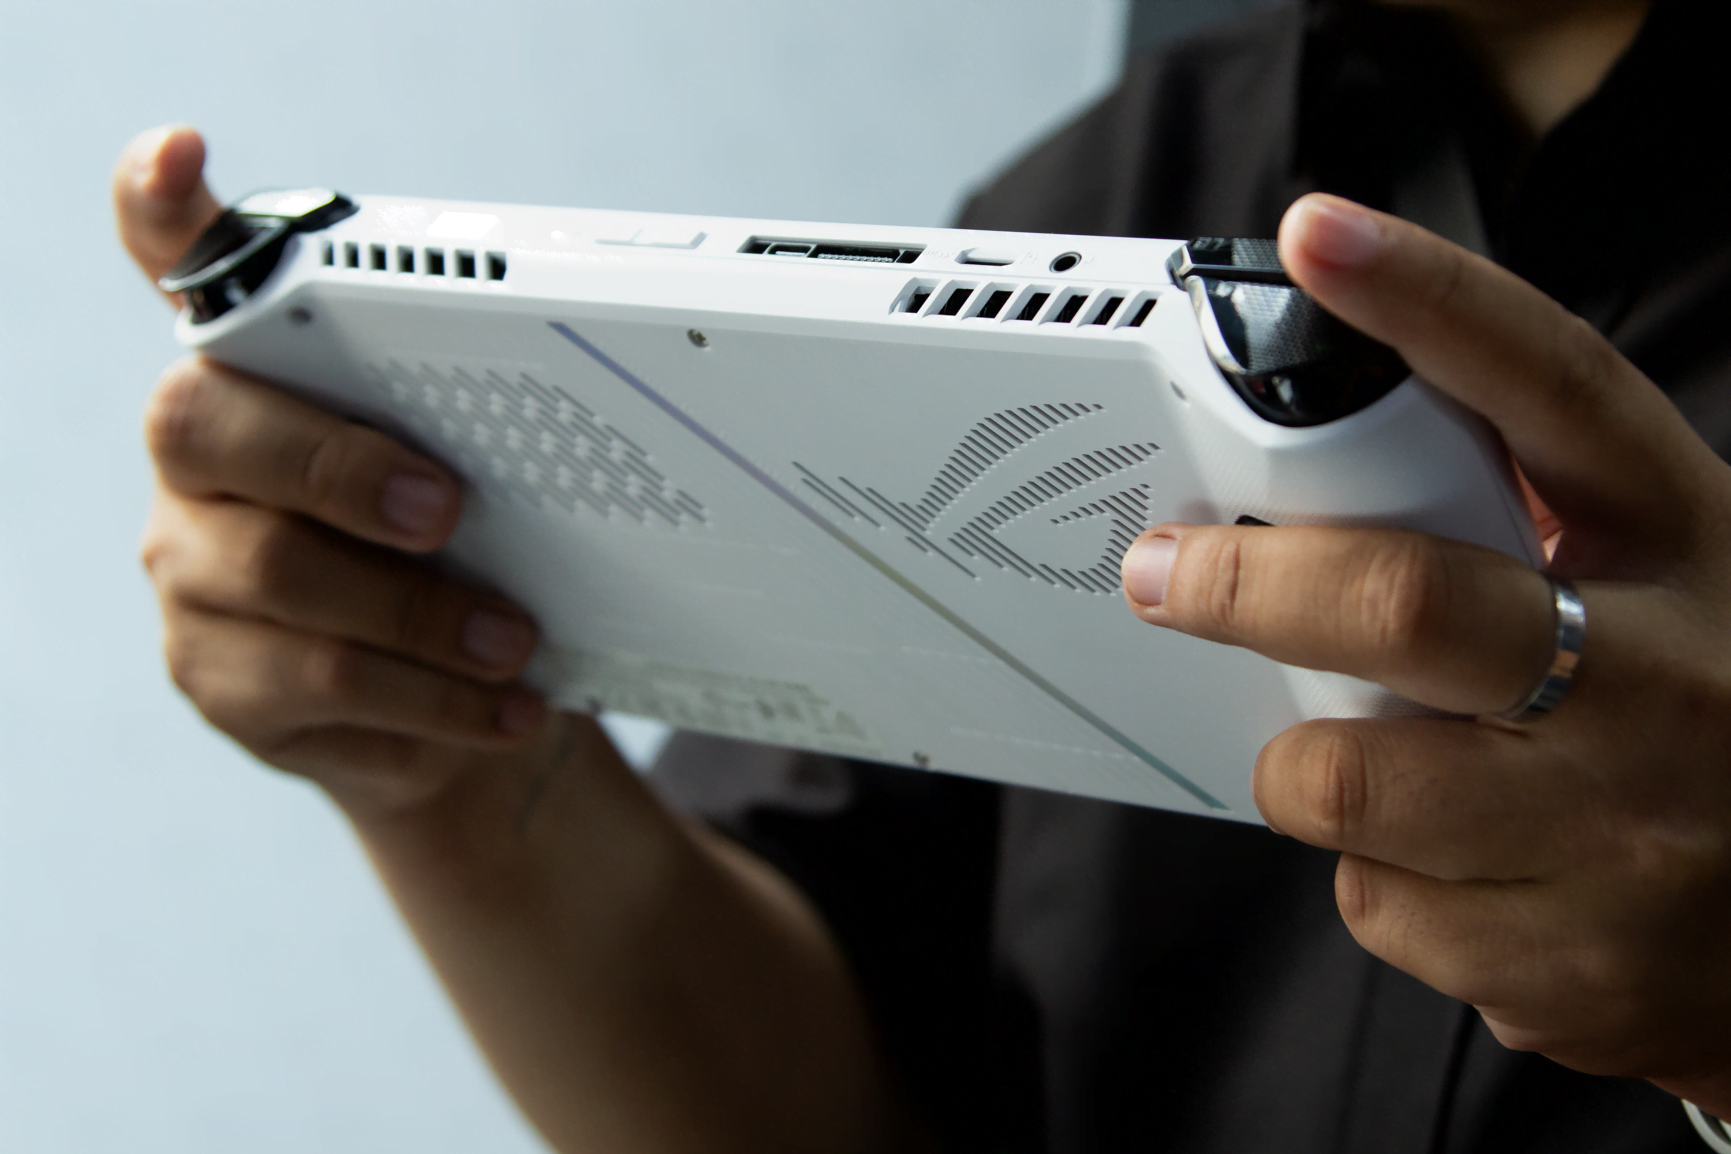 [PR] ASUS ra mắt ROG Ally - Cỗ máy chơi game cầm tay đầu tiên của hãng trang bị vi xử lý AMD Ryzen Z1 Series mới nhất - Image 10